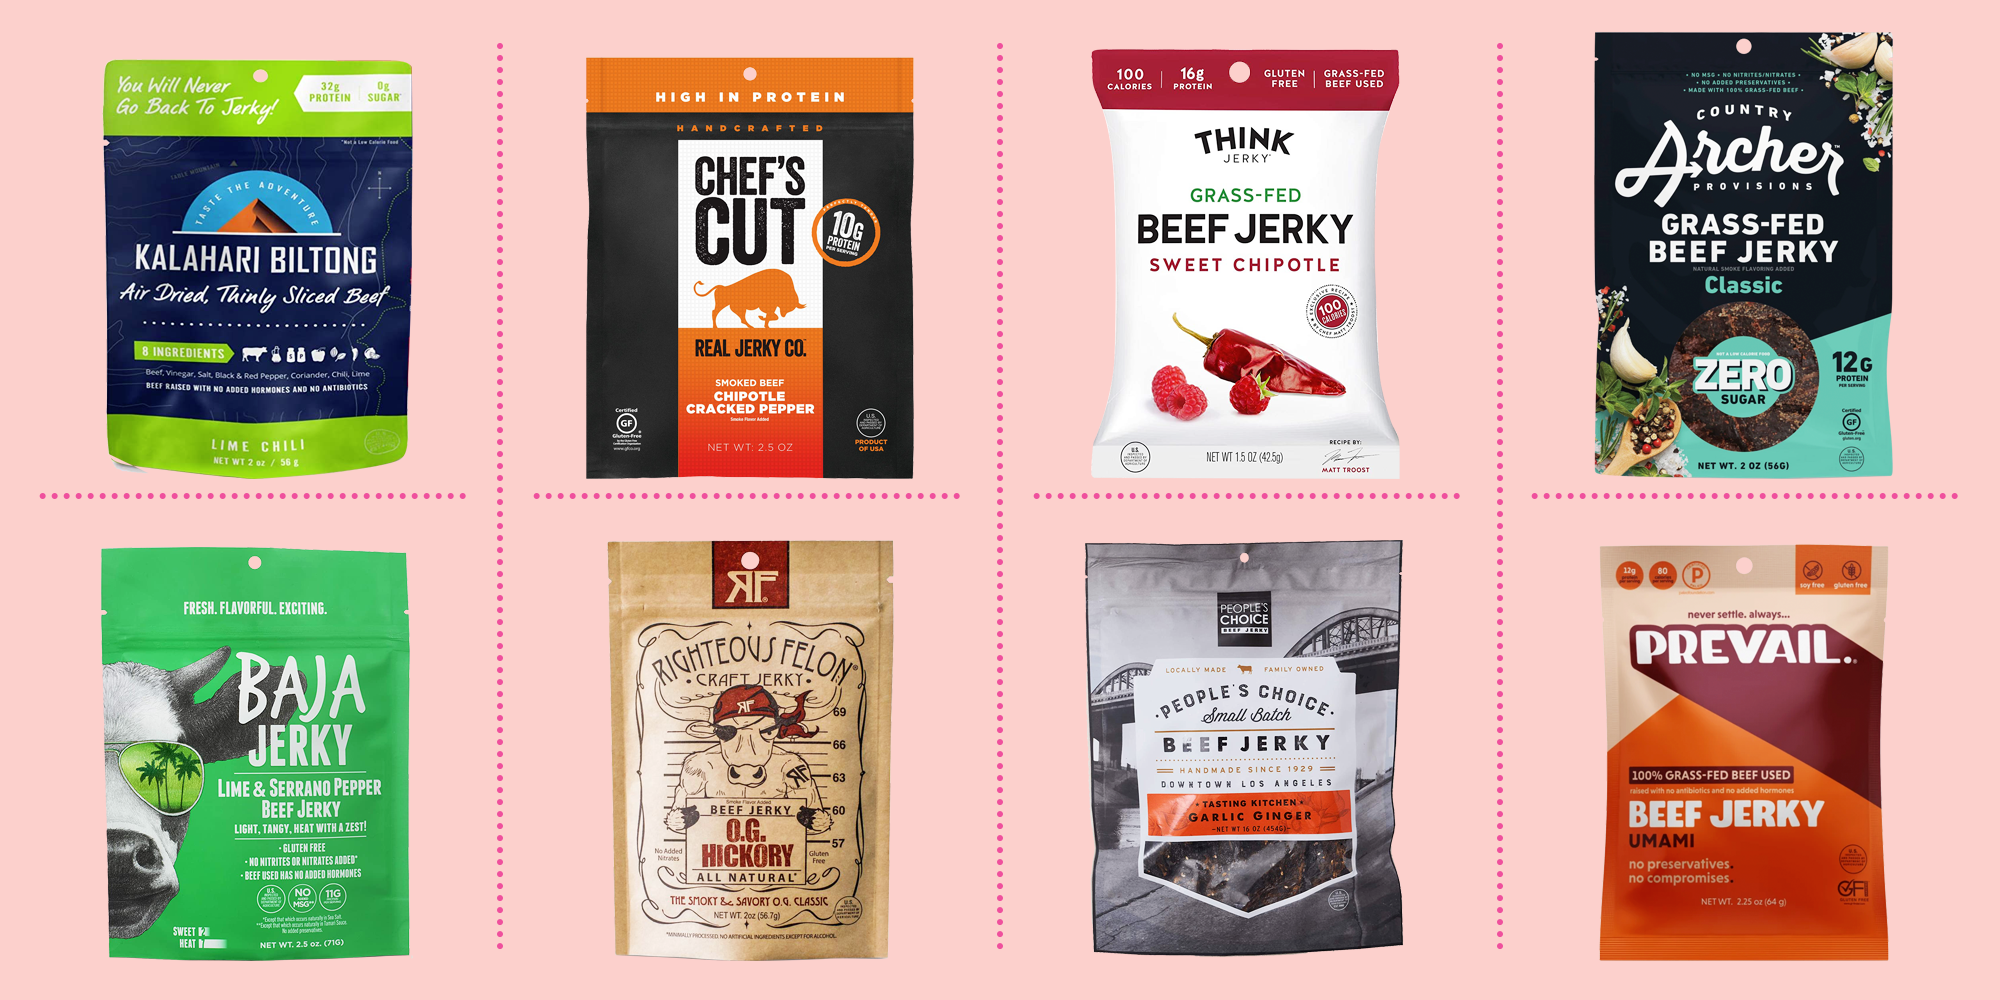 Download 8 Best Beef Jerky Brands 2020 Healthy Beef Jerky PSD Mockup Templates